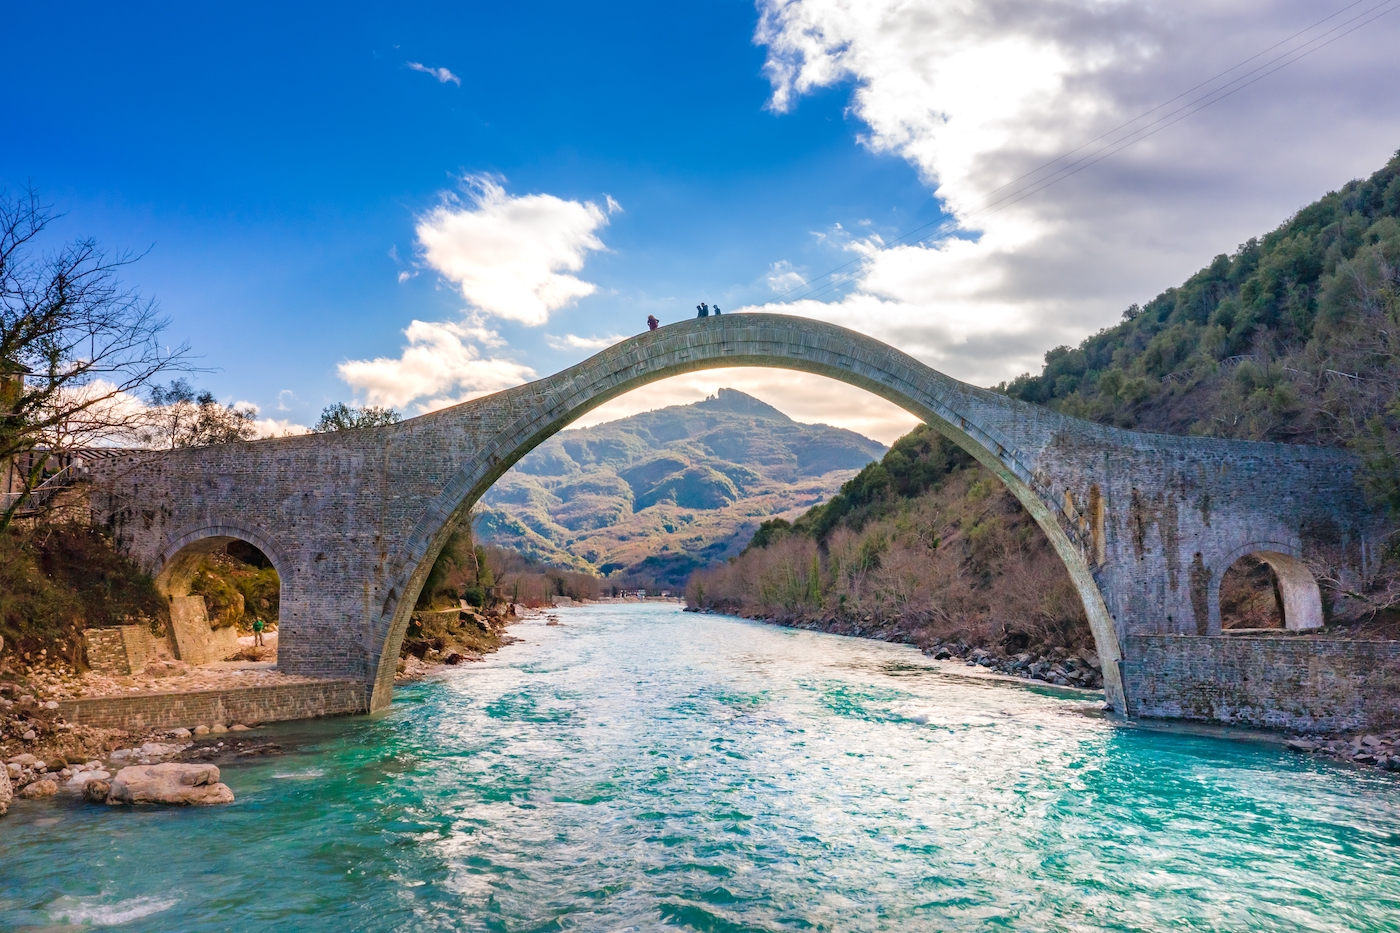 Plaka Arched Bridge in Griekenland, Epirus